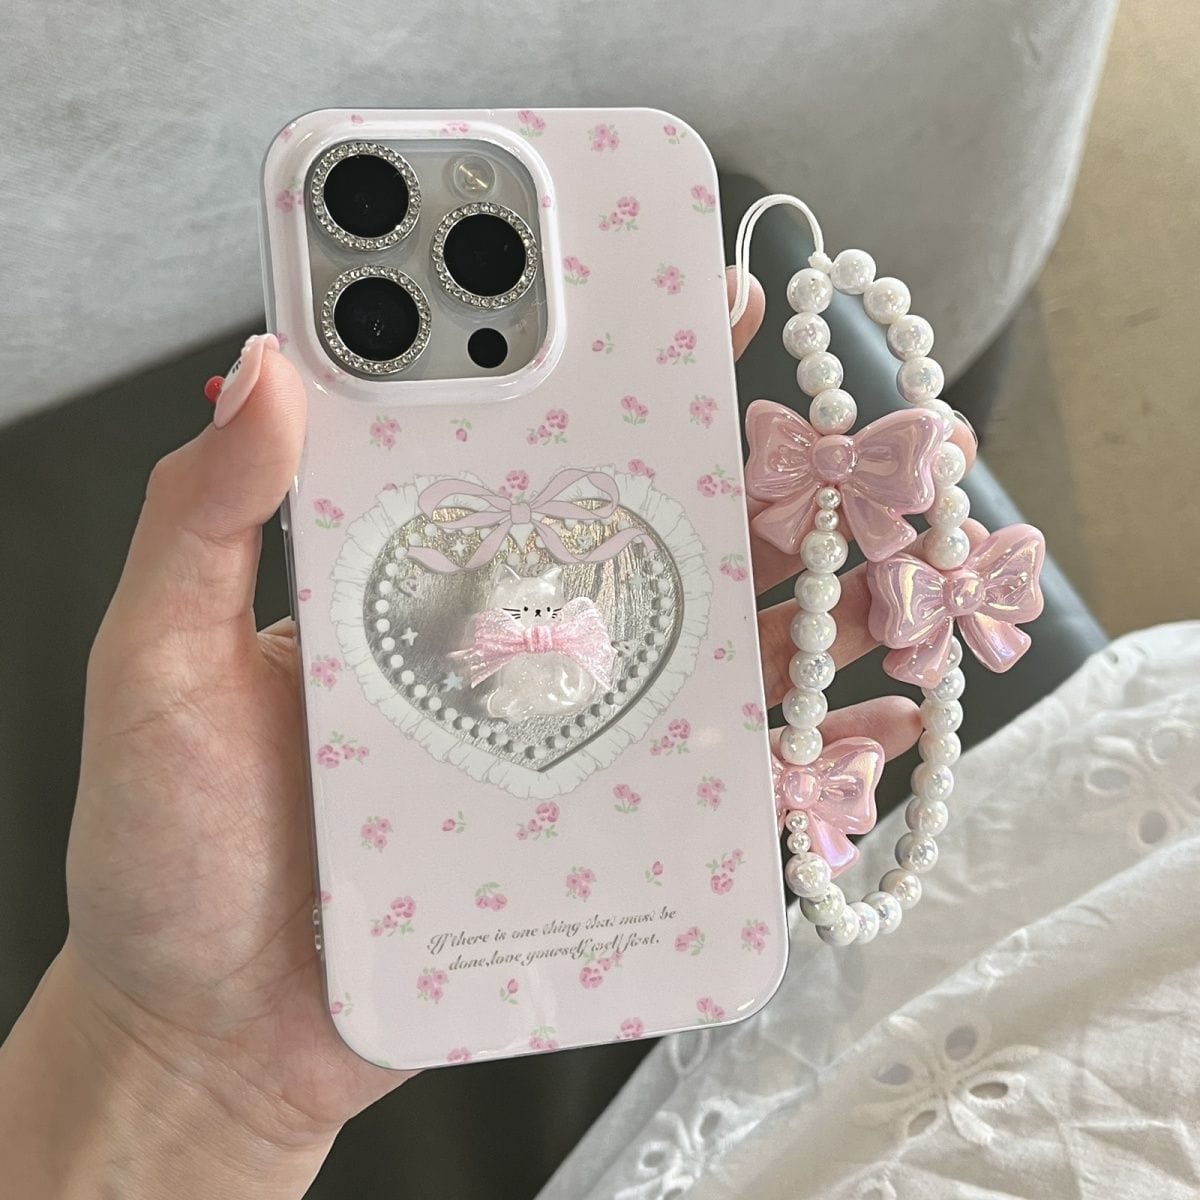 Pink Kitty Heart Bowknot Phone Charm iPhone Case - ArtGalleryZen